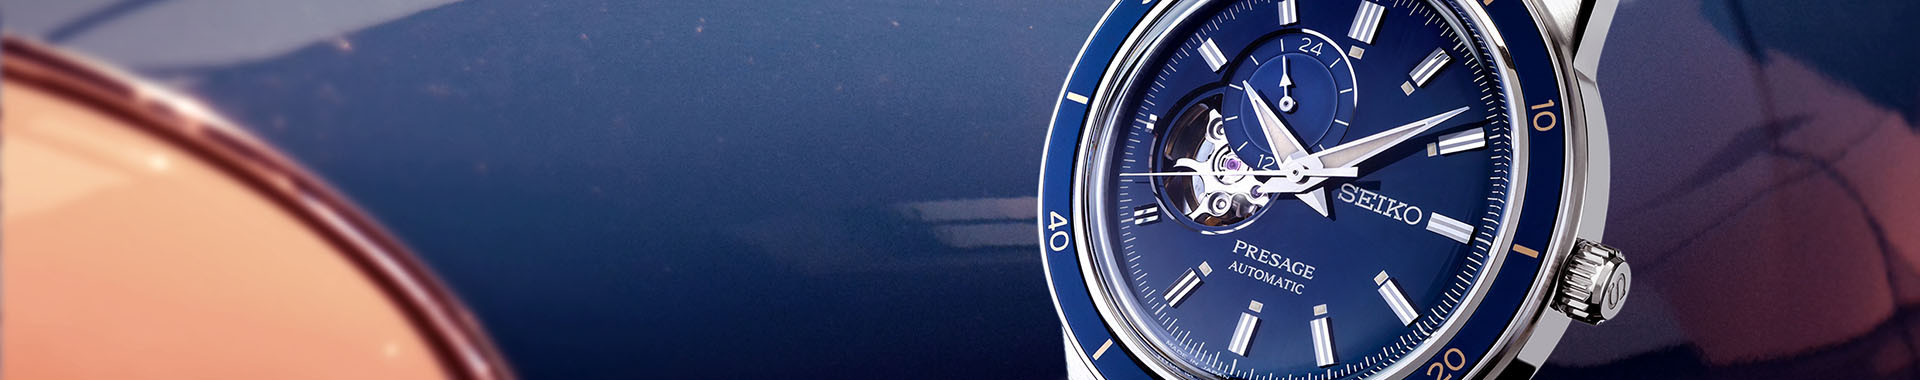 Presage Style 60's : orologio classico uomo vintage - Seiko ufficiale